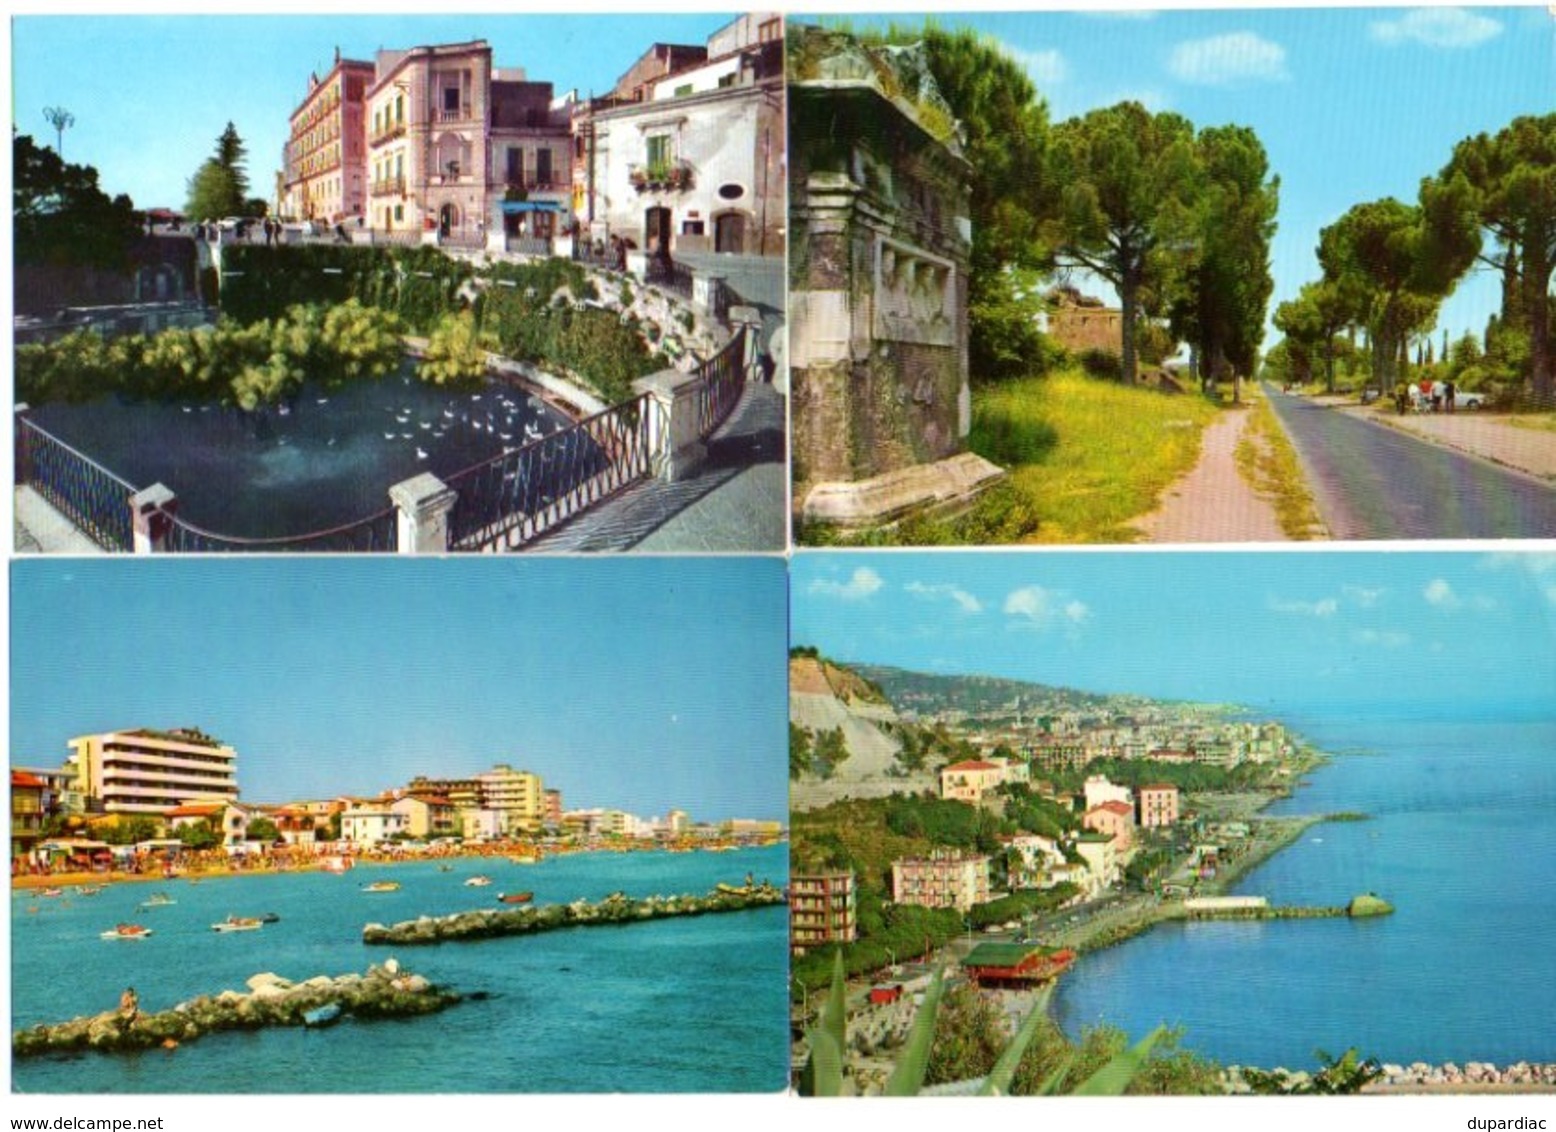 Italie / Au premier acheteur, LOT de cartes postales d'ITALIE et carnets : plus de 1360 vues différentes, très bon état.